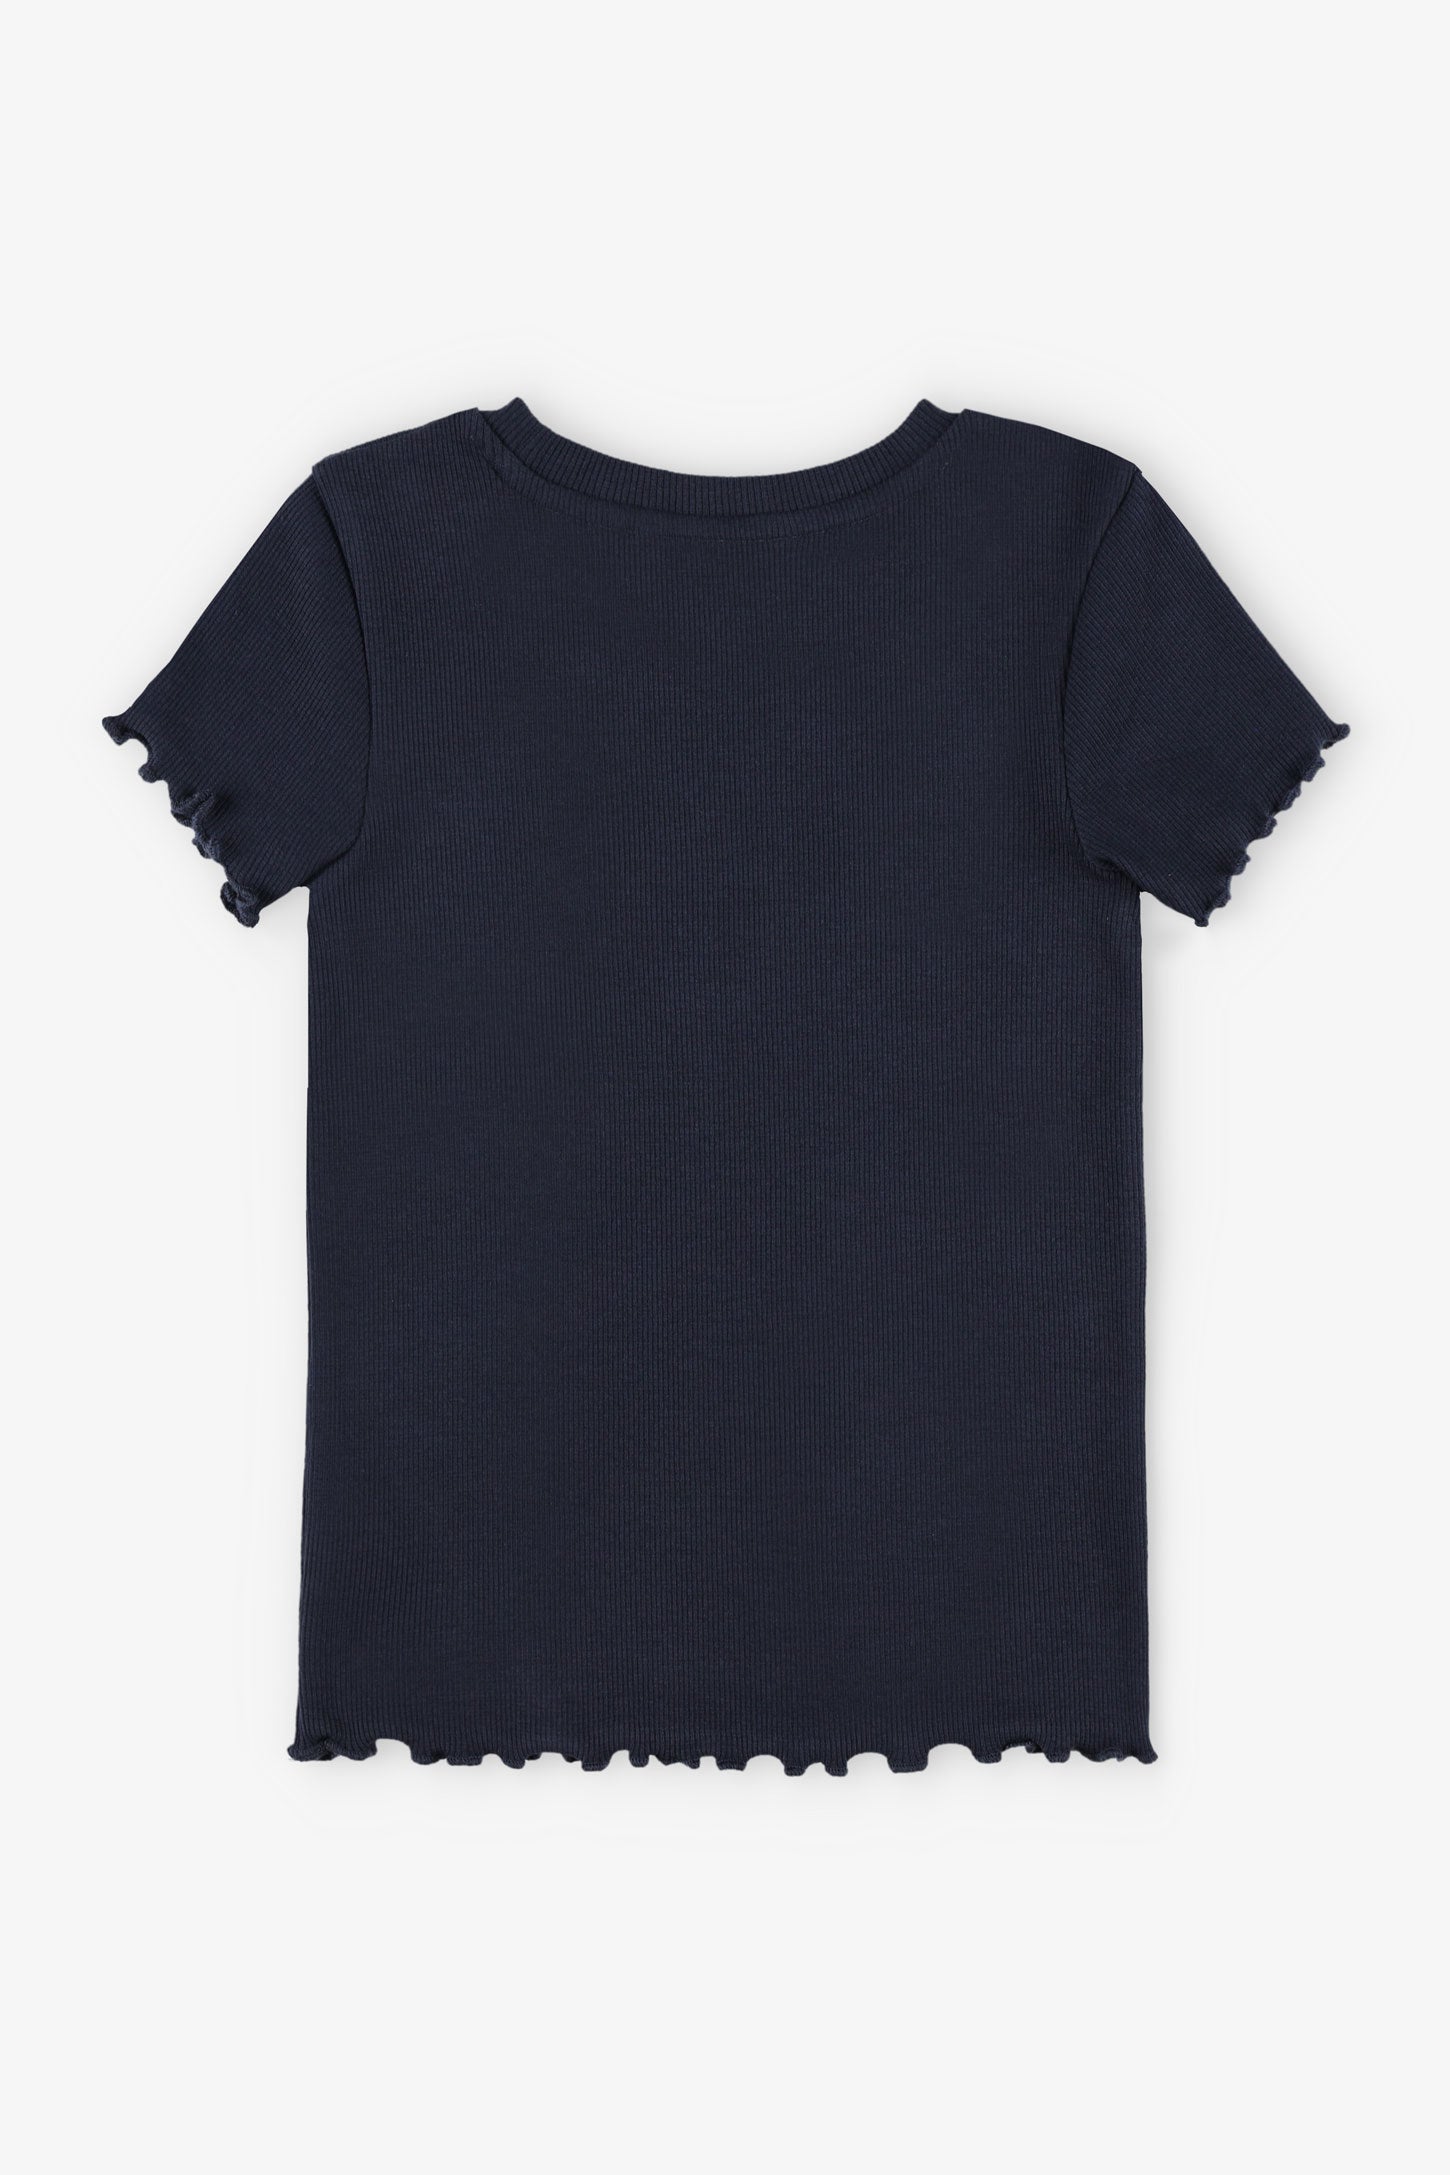 T-shirt côtelé finitions laitue - Enfant fille && MARIN